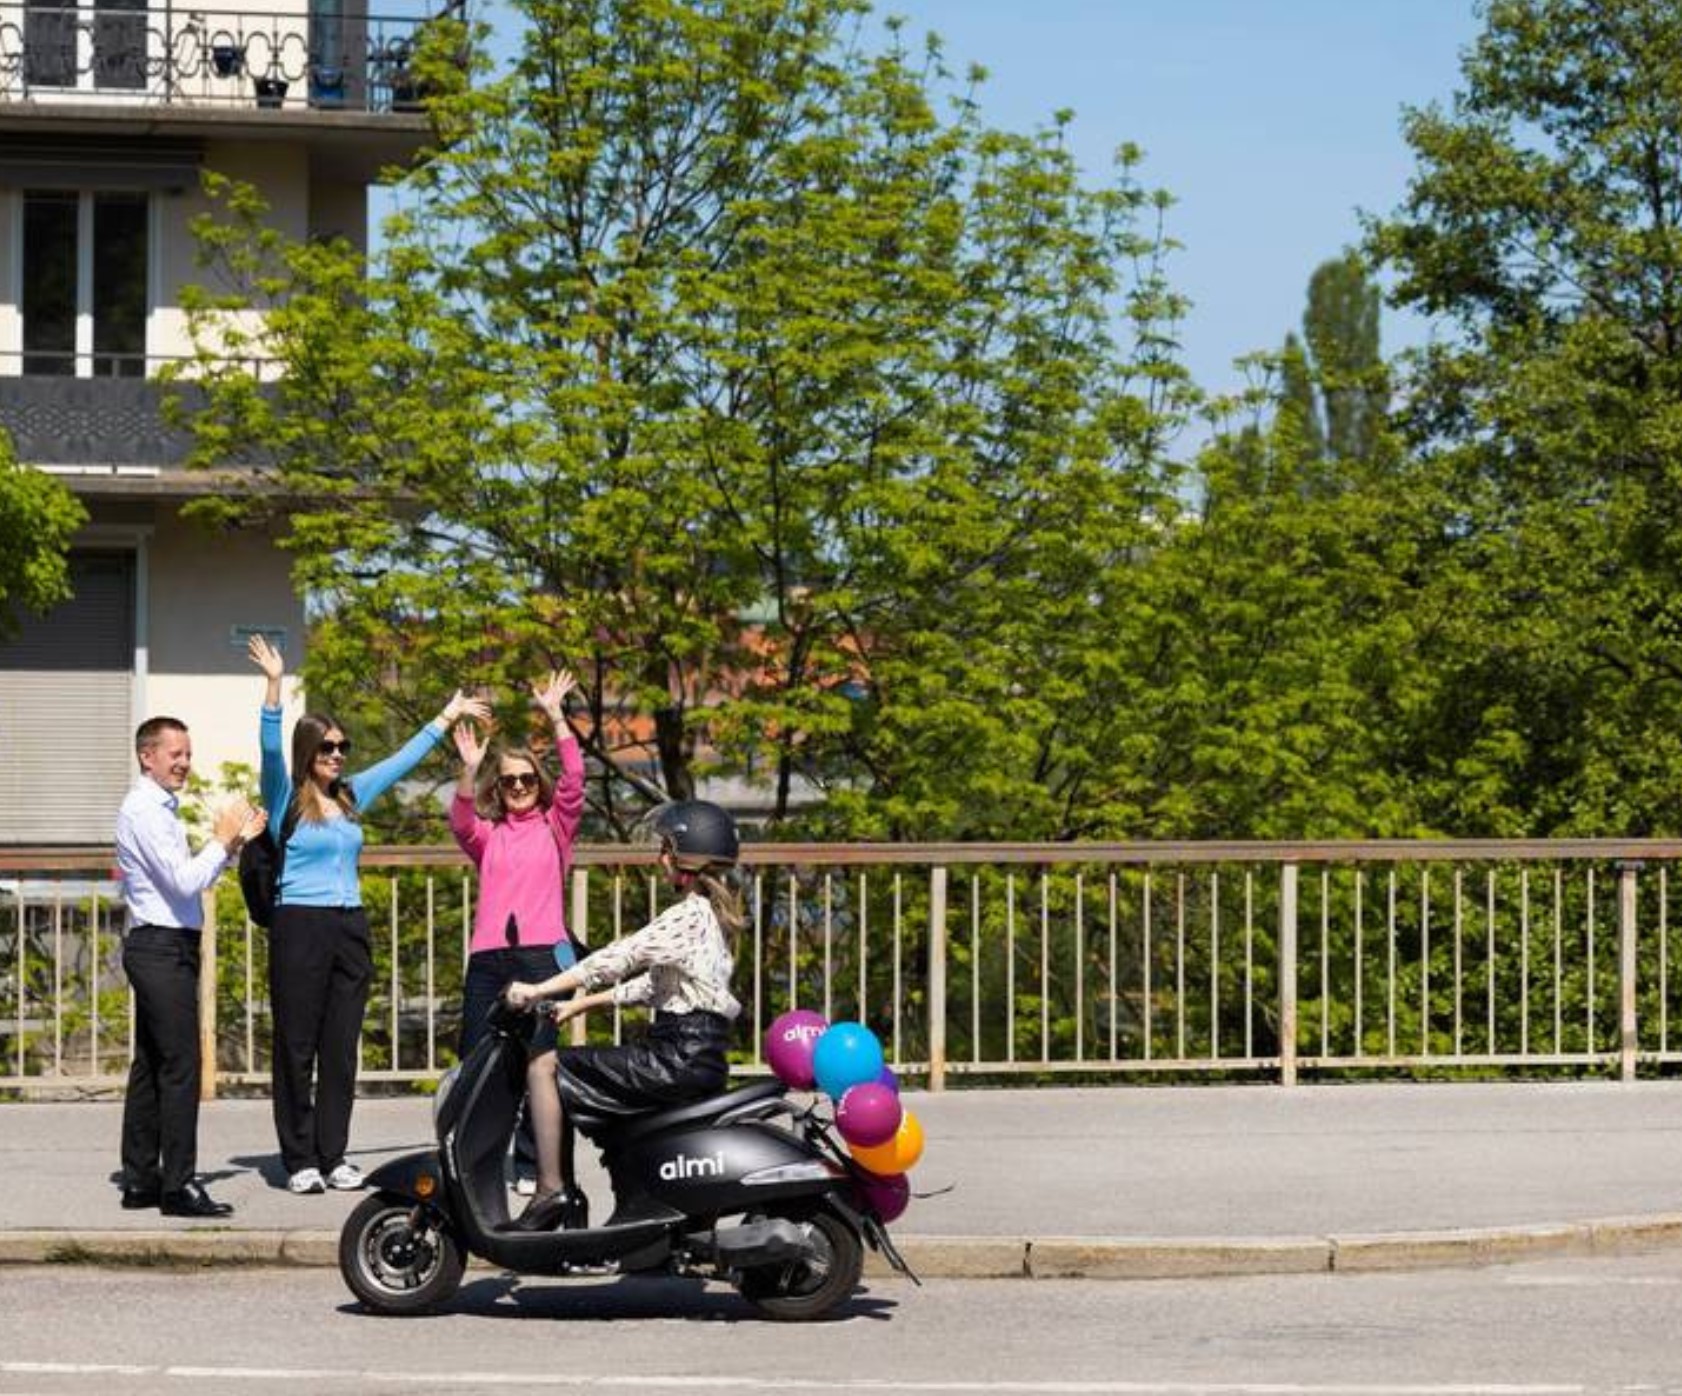 kvinna kör moped med ballonger baktill och kör förbi 3 personer vid vägen som vinkar glatt